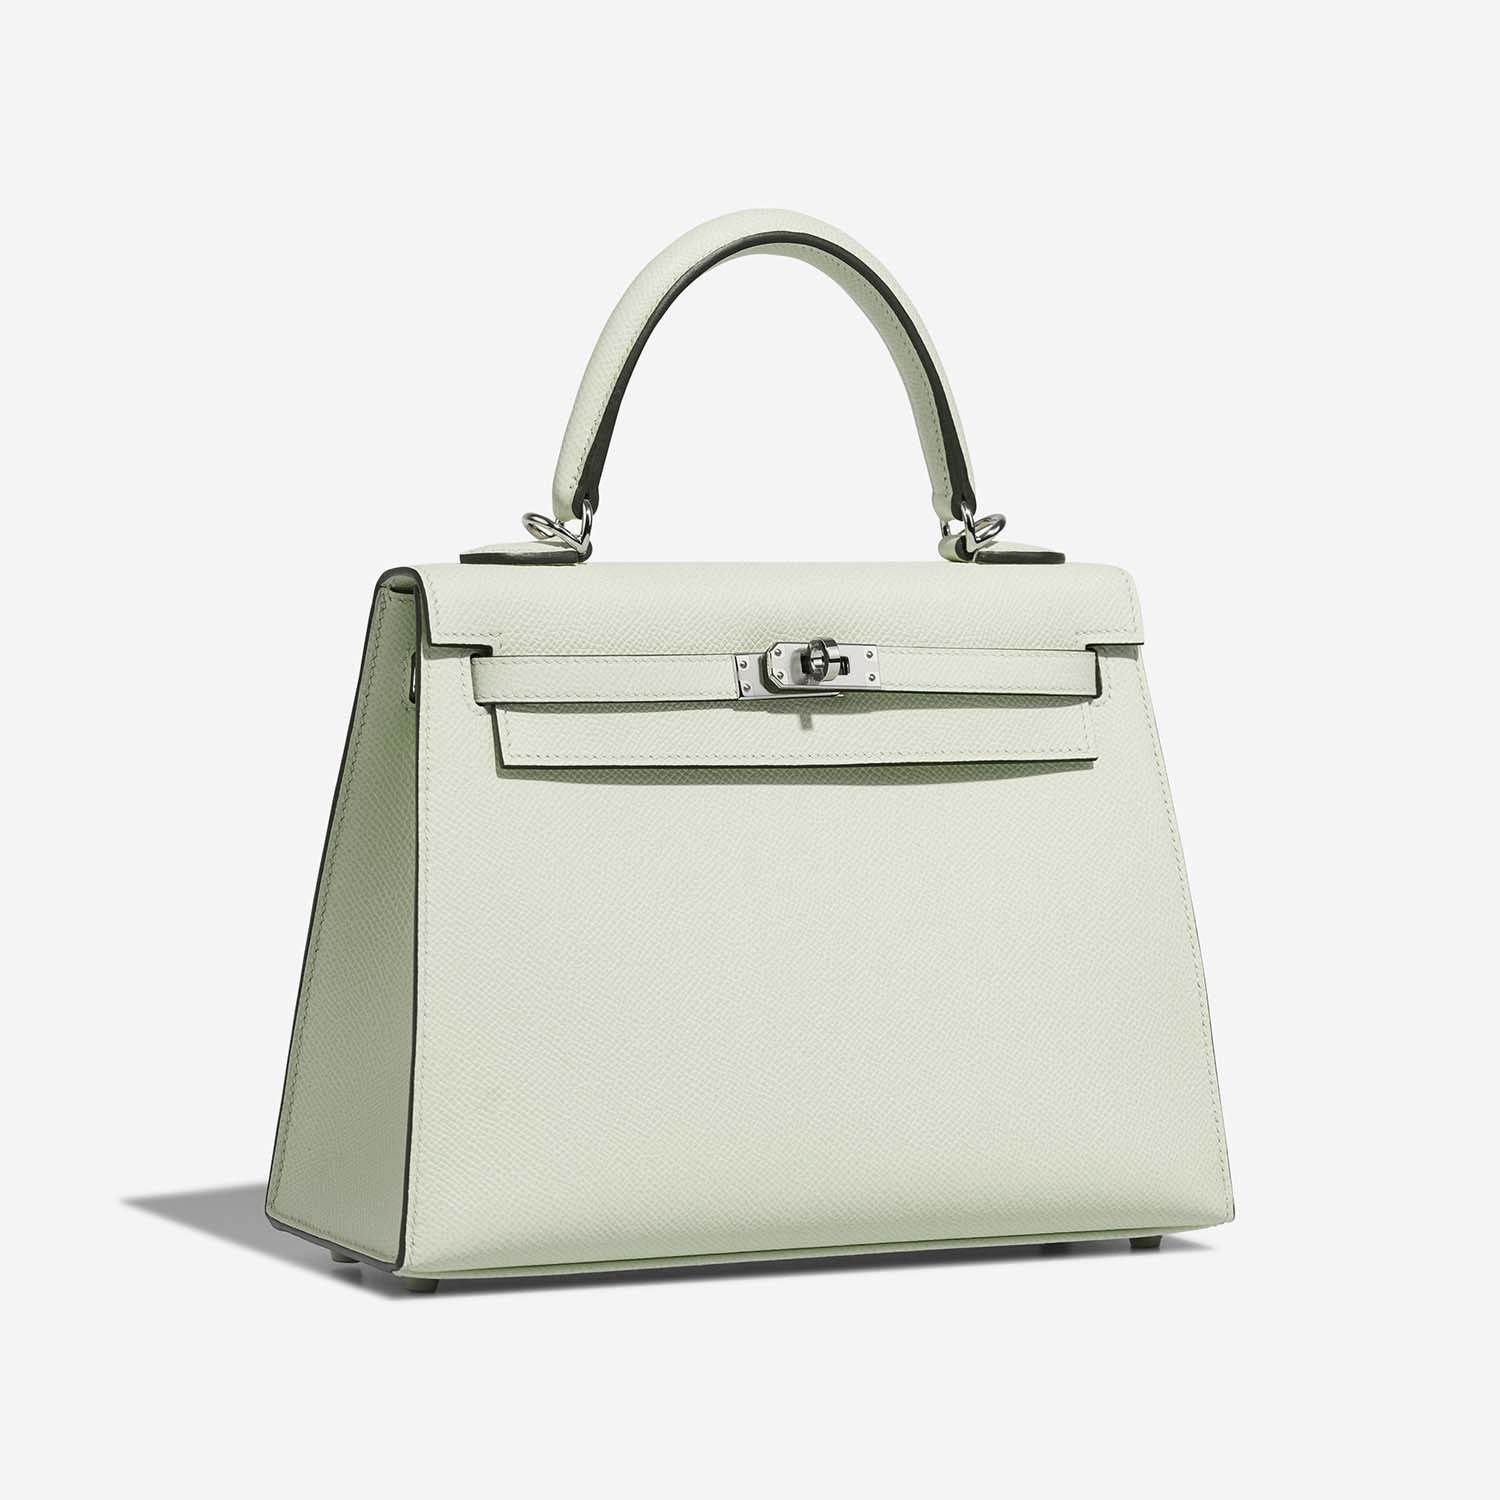 Hermès Kelly 25 VertFizz Side Front | Verkaufen Sie Ihre Designer-Tasche auf Saclab.com